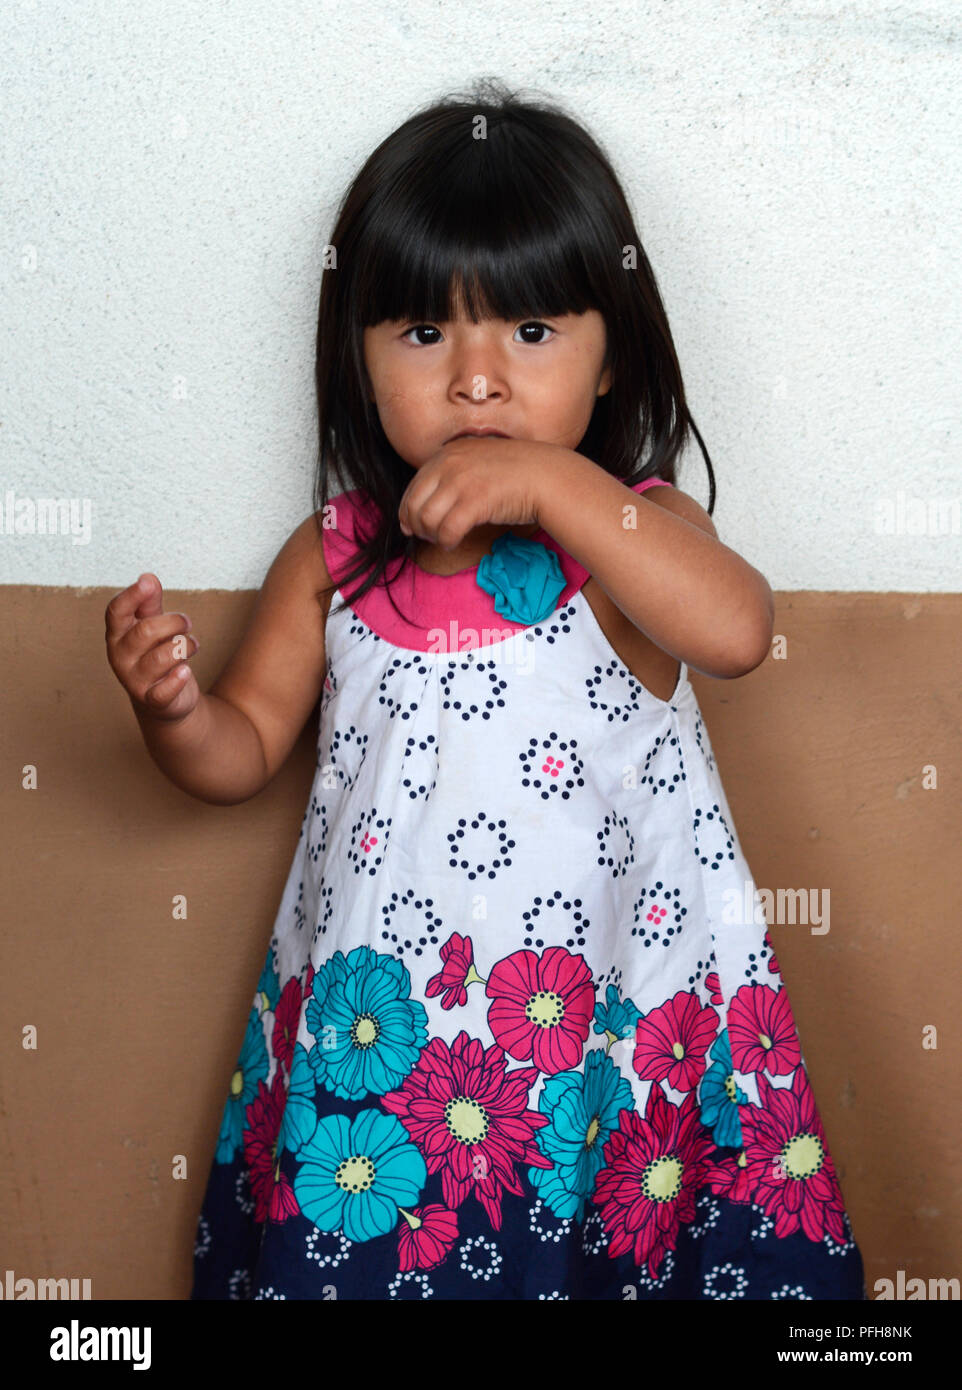 A young Hopi girl at the Santa Fe Indian Market. Stock Photo